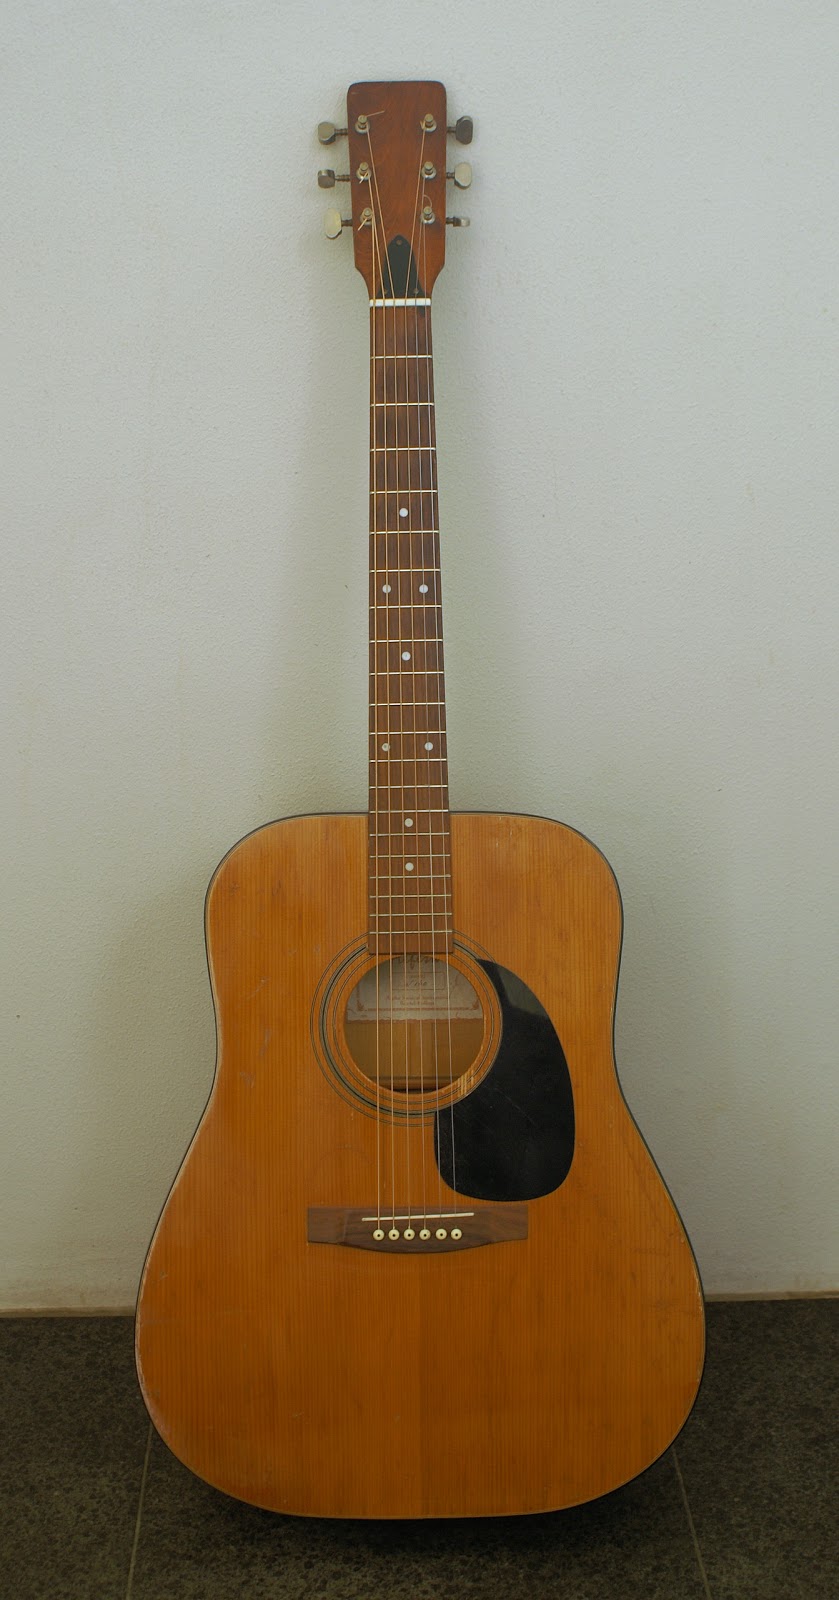 Fender acoustic guitar serial numbers